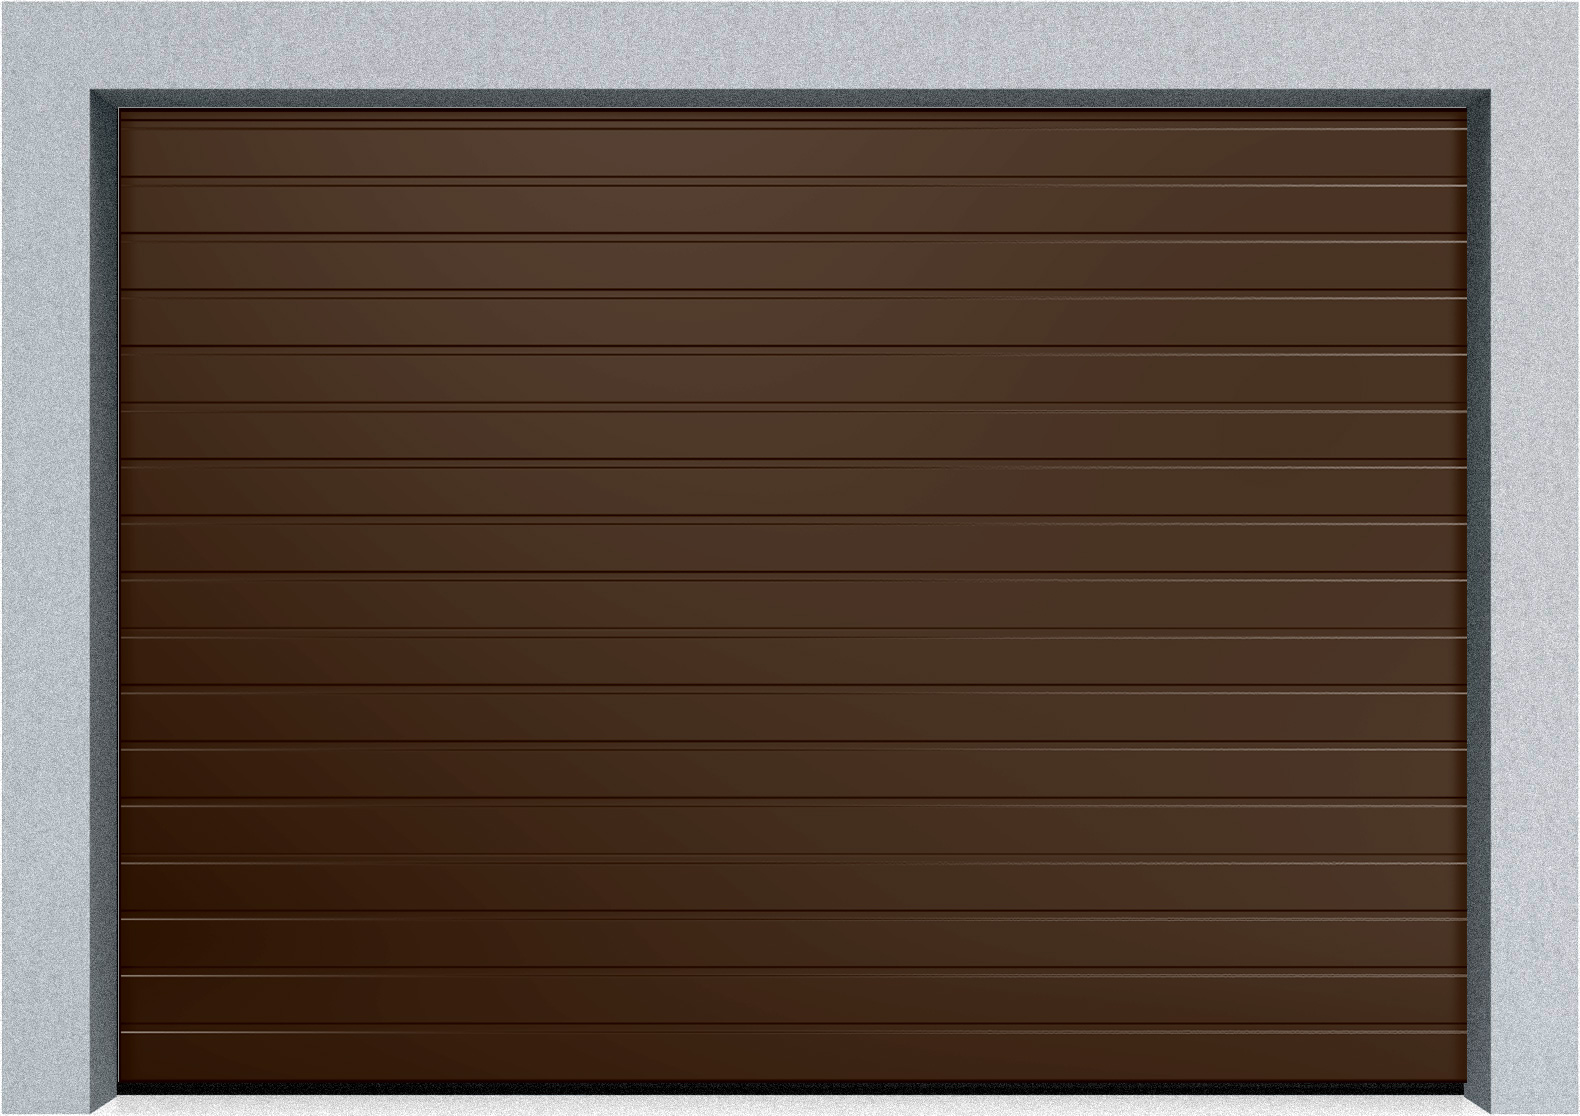  Автоматические секционные гаражные ворота DoorHan RSD02 3000х3300 S-гофр, M-гофр, Микроволна стандартные цвета, фото 2 